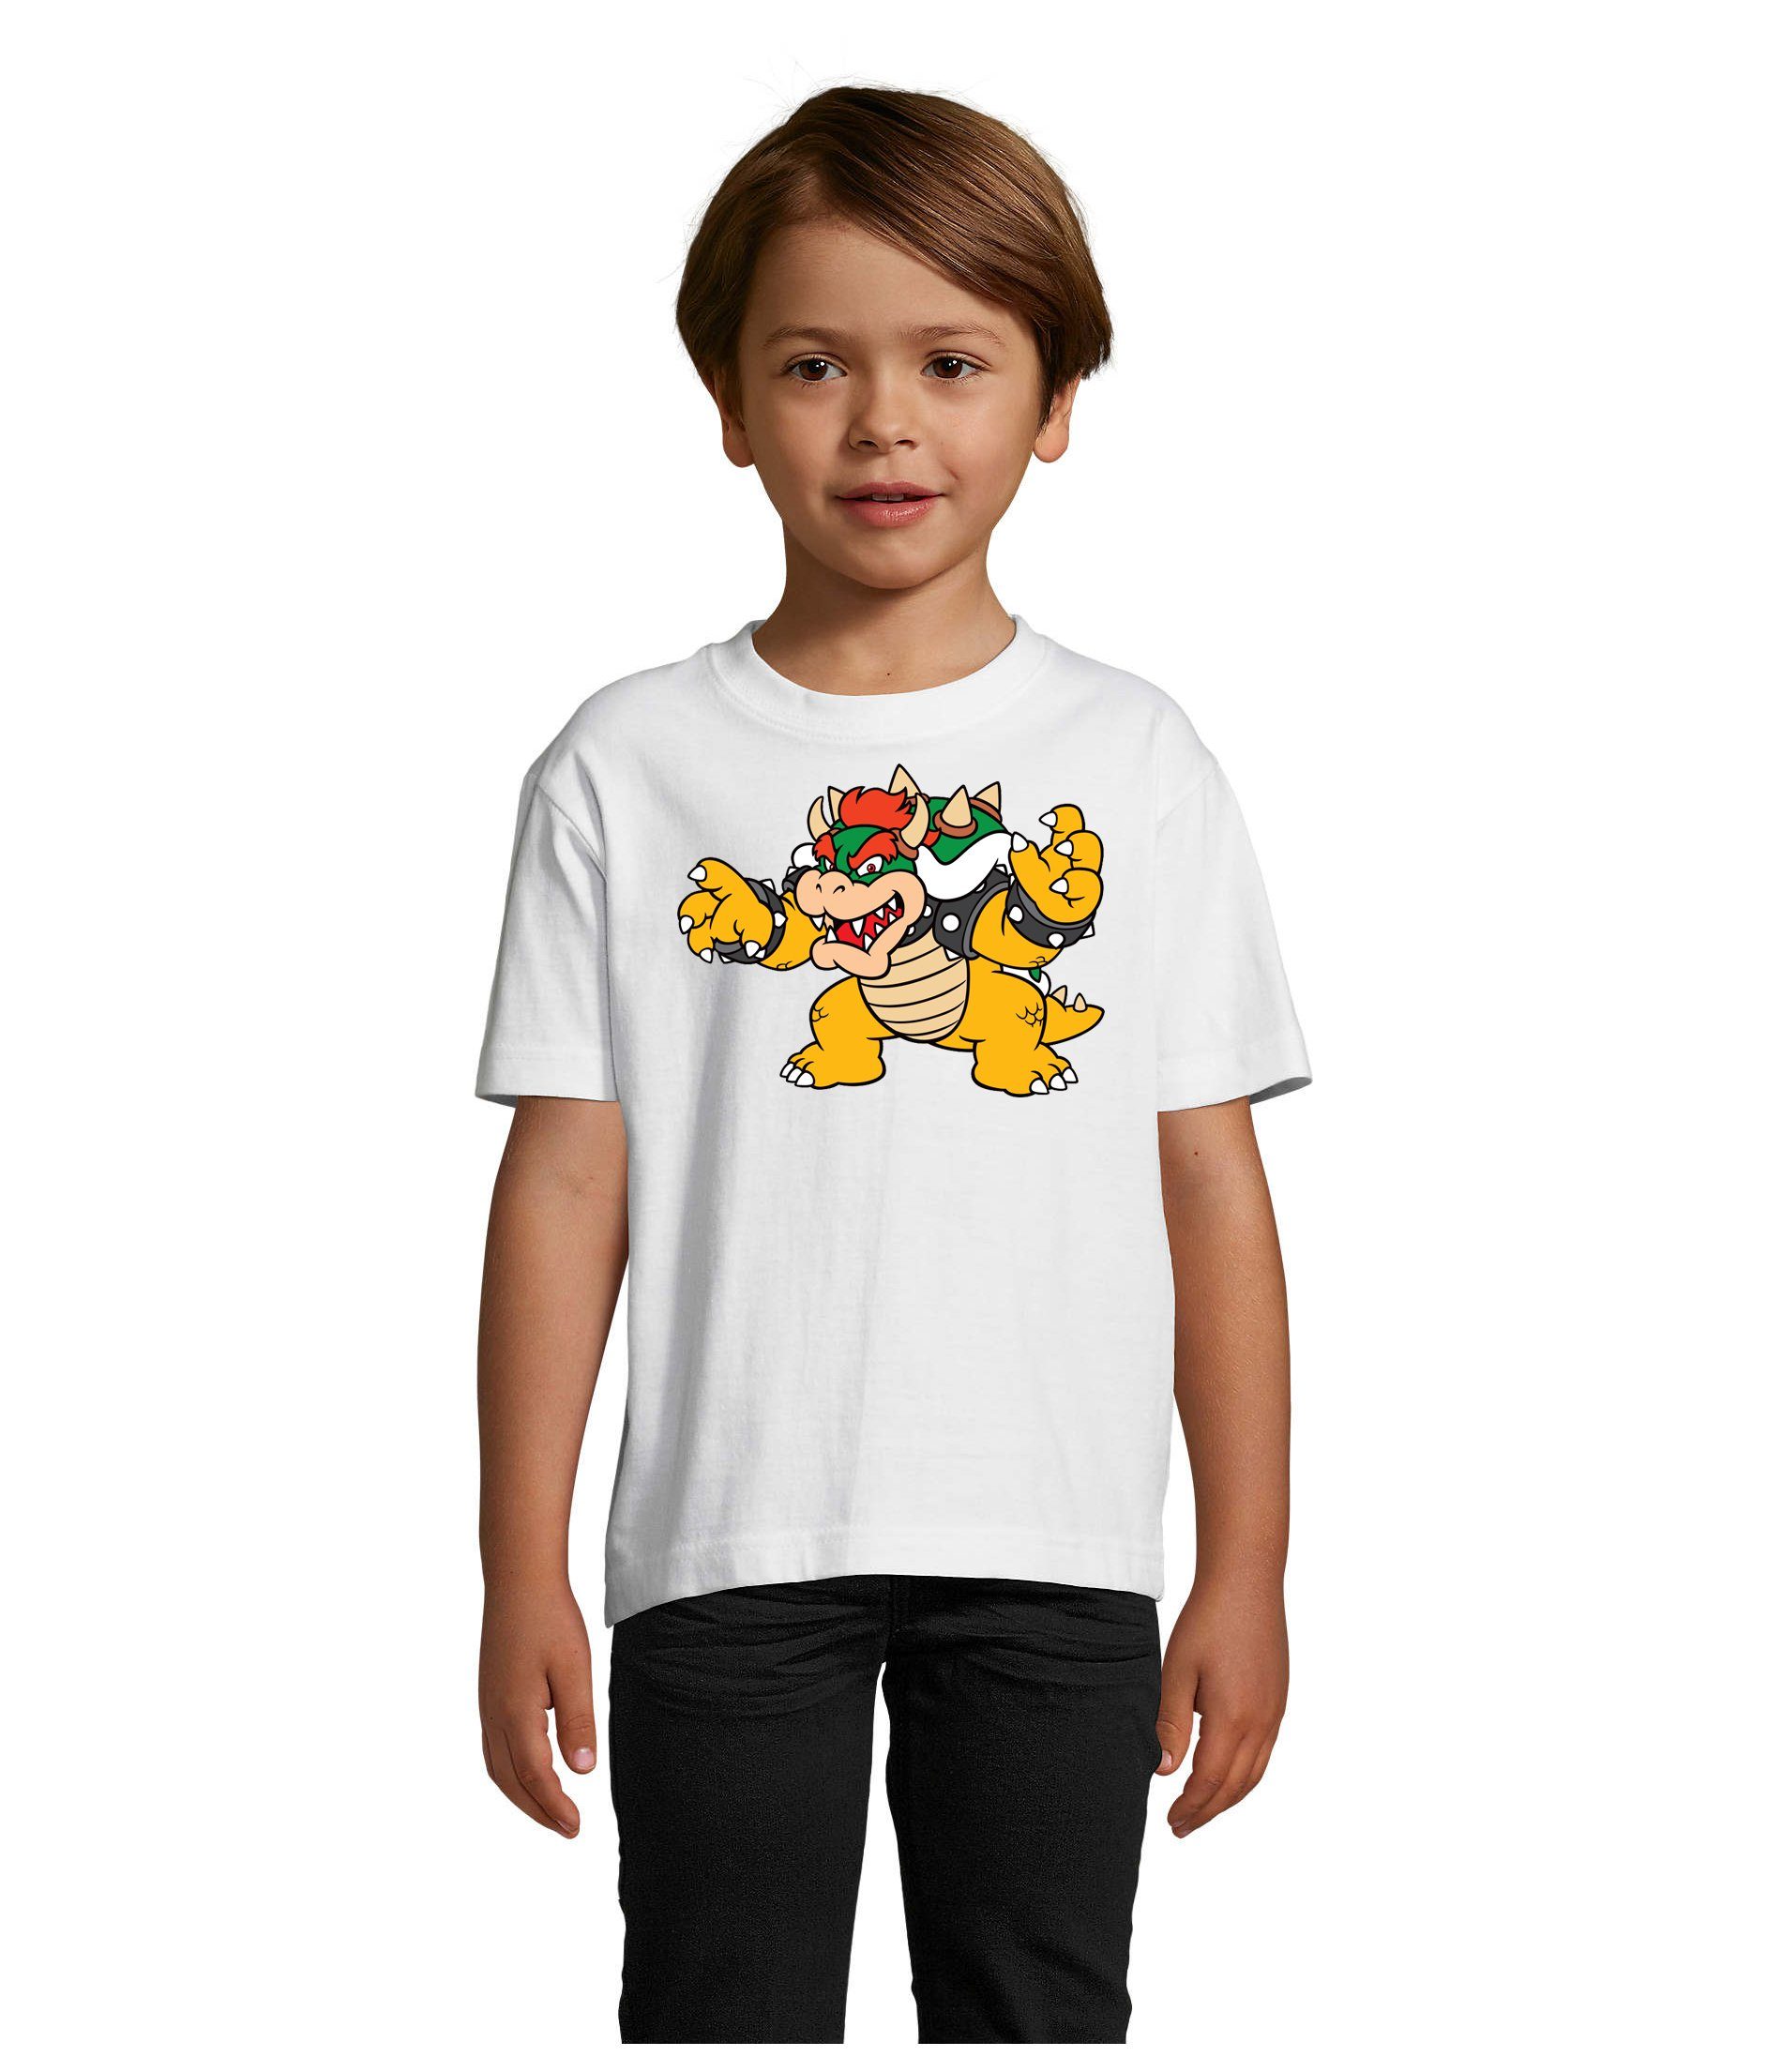 Blondie & Brownie T-Shirt Kinder Bowser Nintendo Mario Yoshi Luigi Game Gamer Konsole Weiss